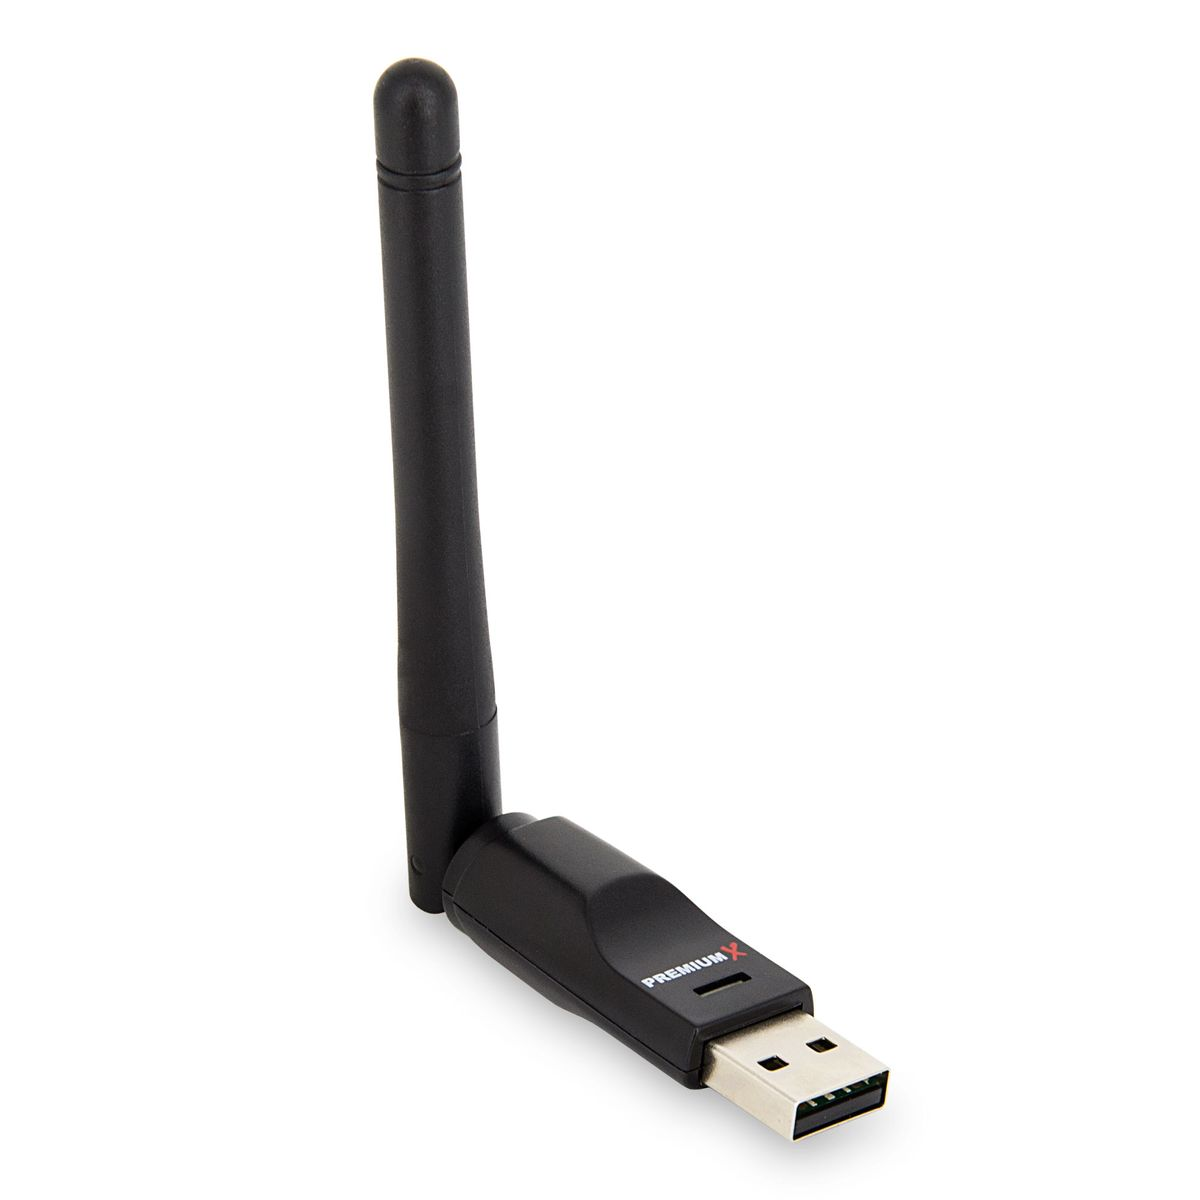 HD Digital VU+ (Schwarz) ZERO Mbits Antenne Linux mit Tuner DVB-S2 FullHD 150 Receiver Sat Receiver Sat Wlan-Stick 1x SAT Black